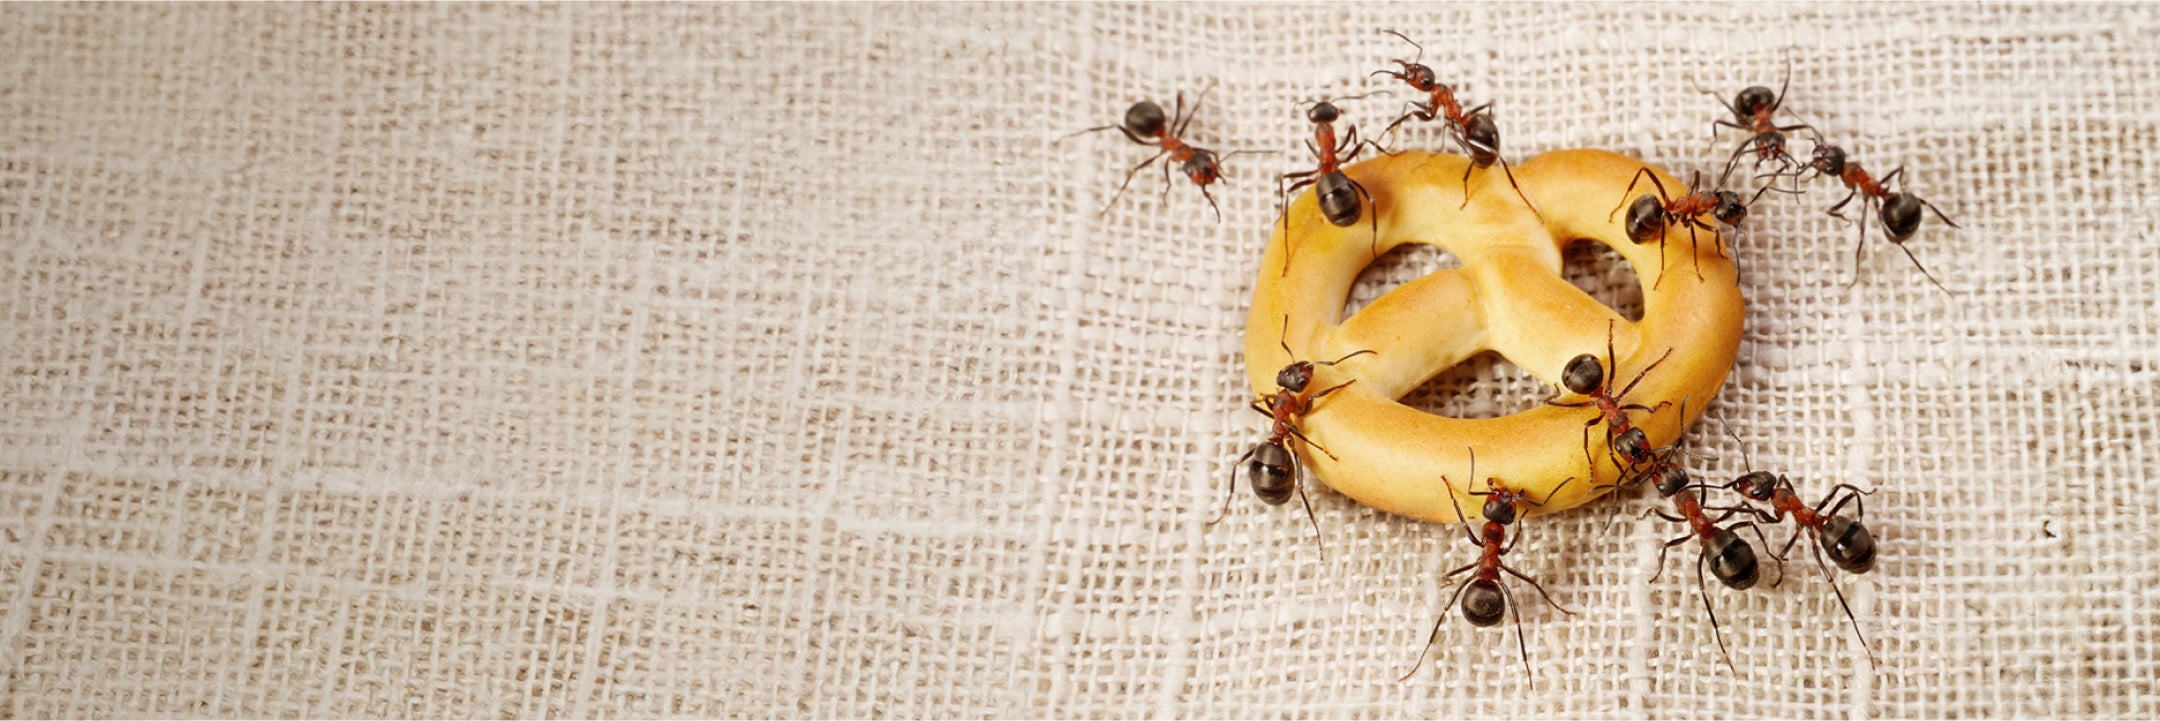 Ameisen inspizieren ein Stück Gebäck auf einem Tuch liegend